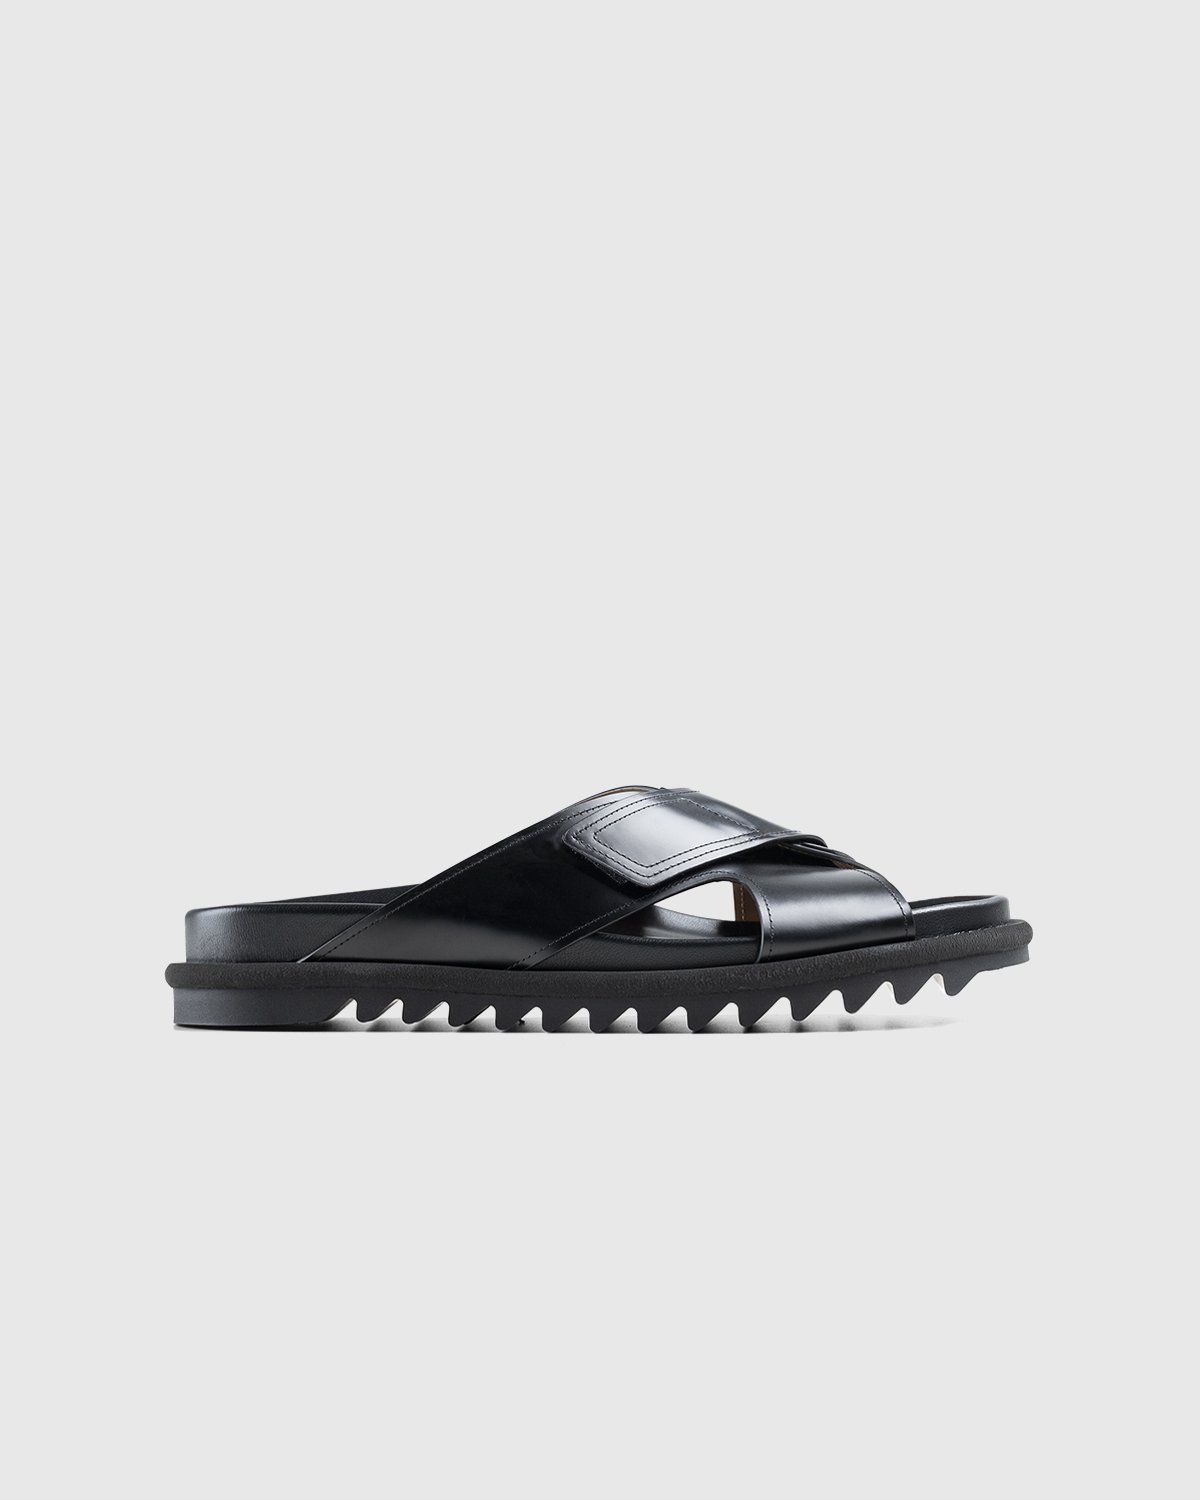 Dries Van Noten – Leather Criss-Cross Sandals Black - Image 1